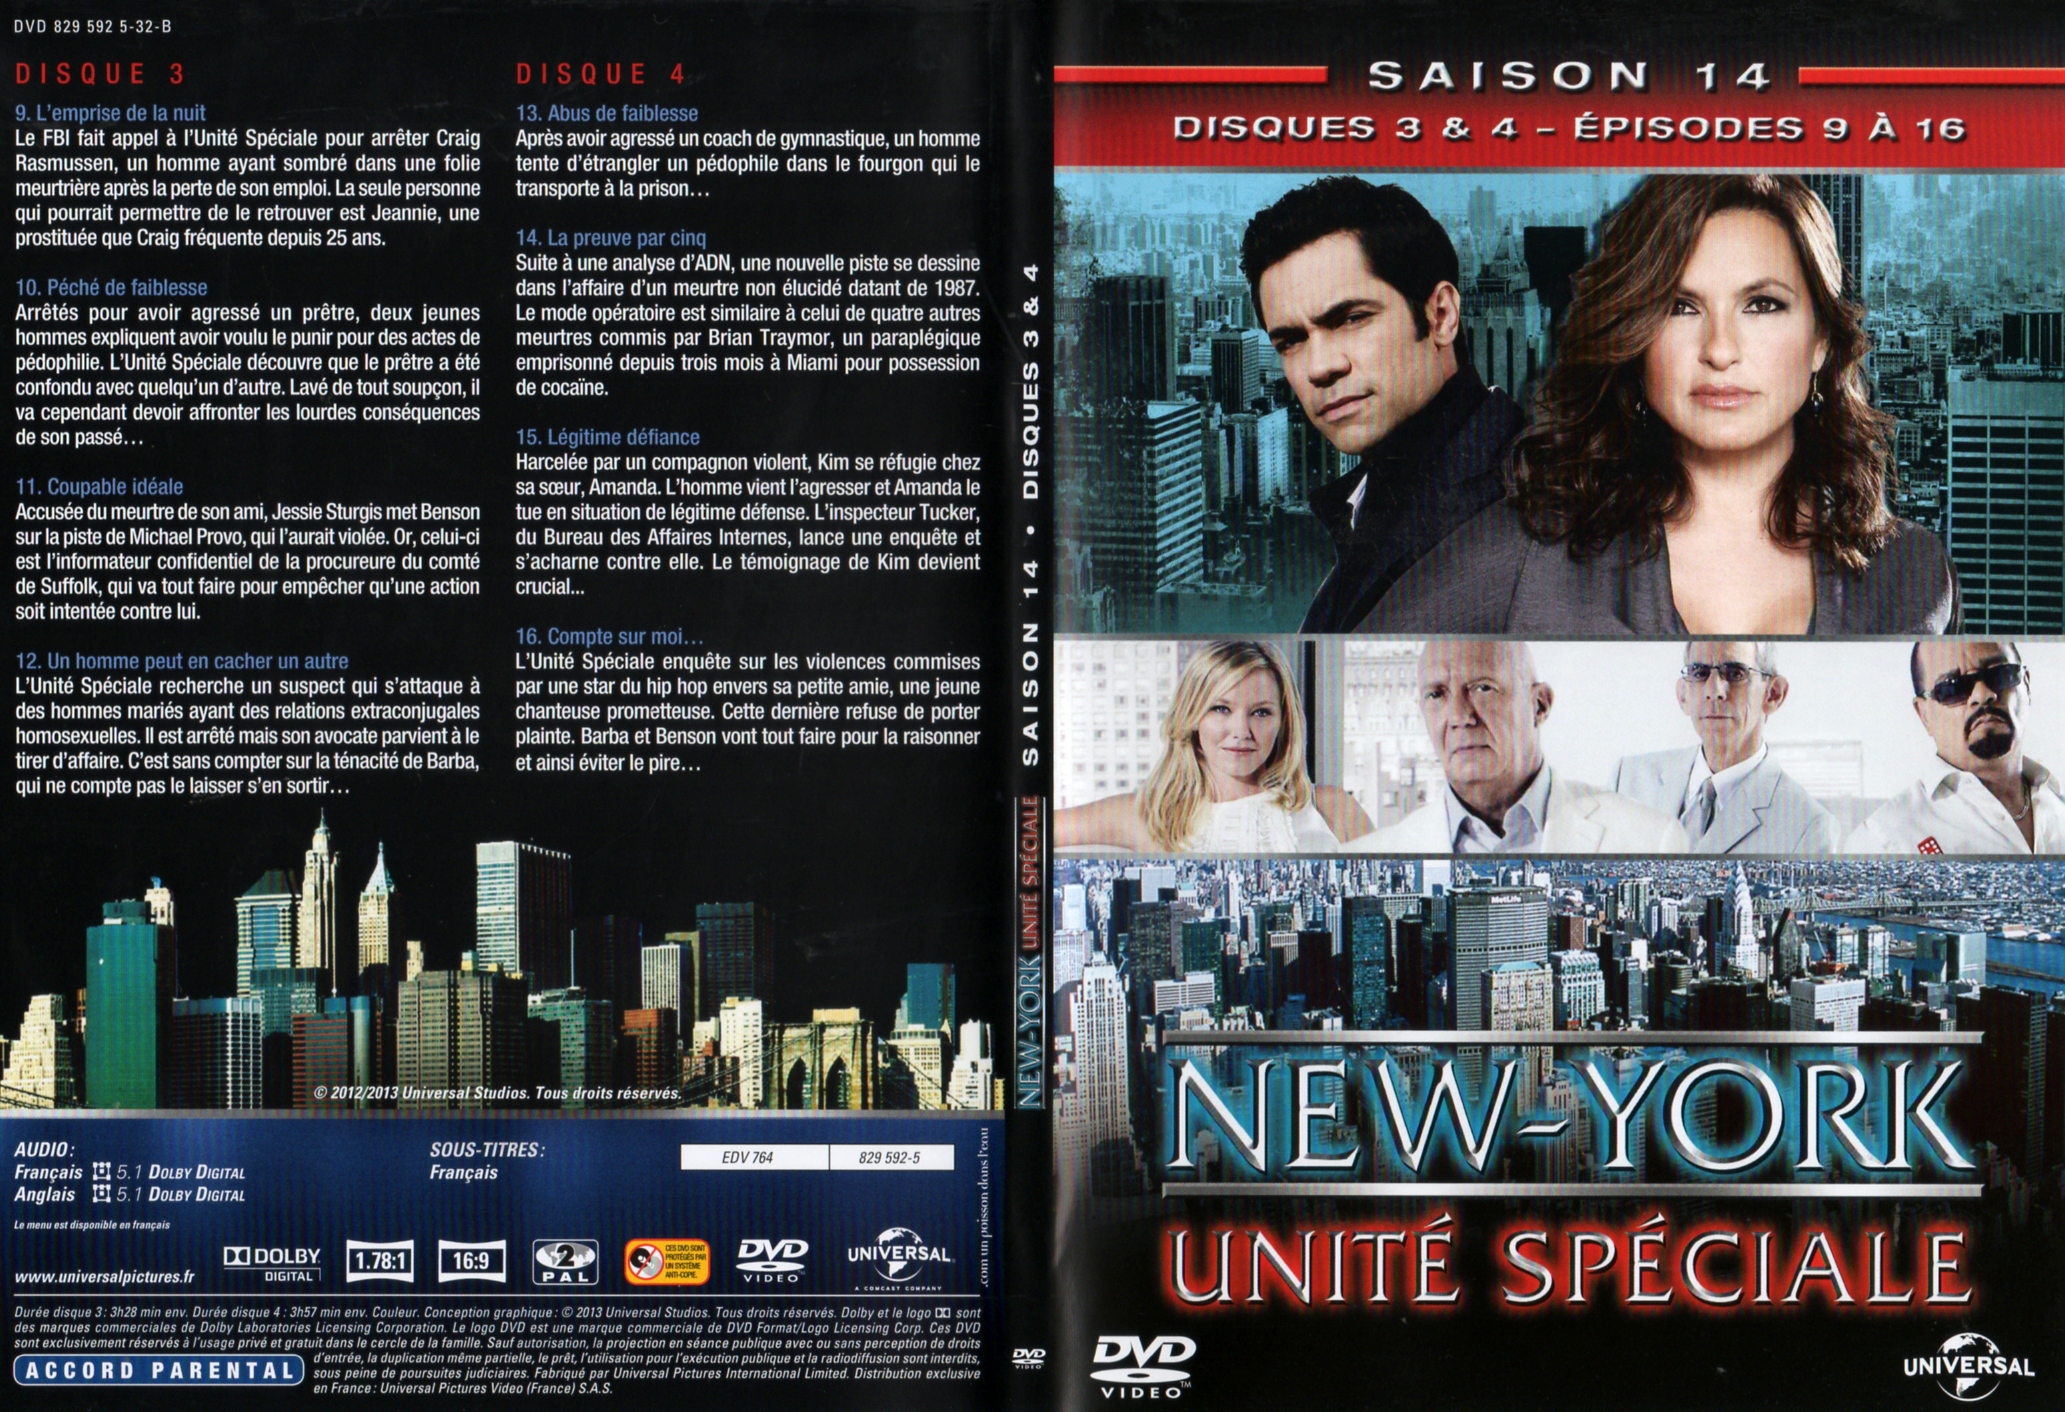 Jaquette DVD New York unit spciale saison 14 DVD 2